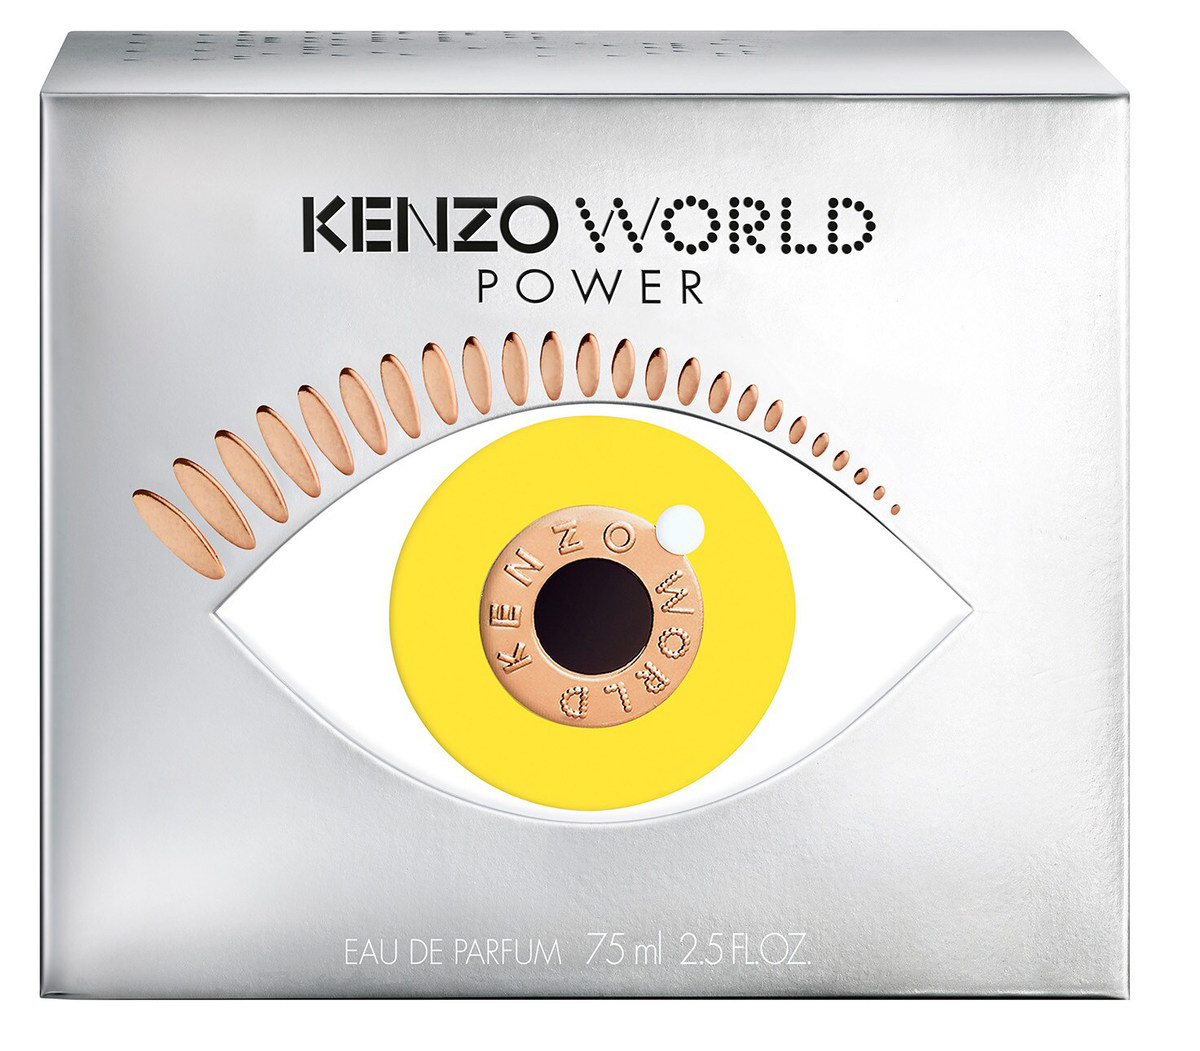 Kenzo - World Power de Facts Reviews de Parfum (Eau Parfum) & Perfume Eau »